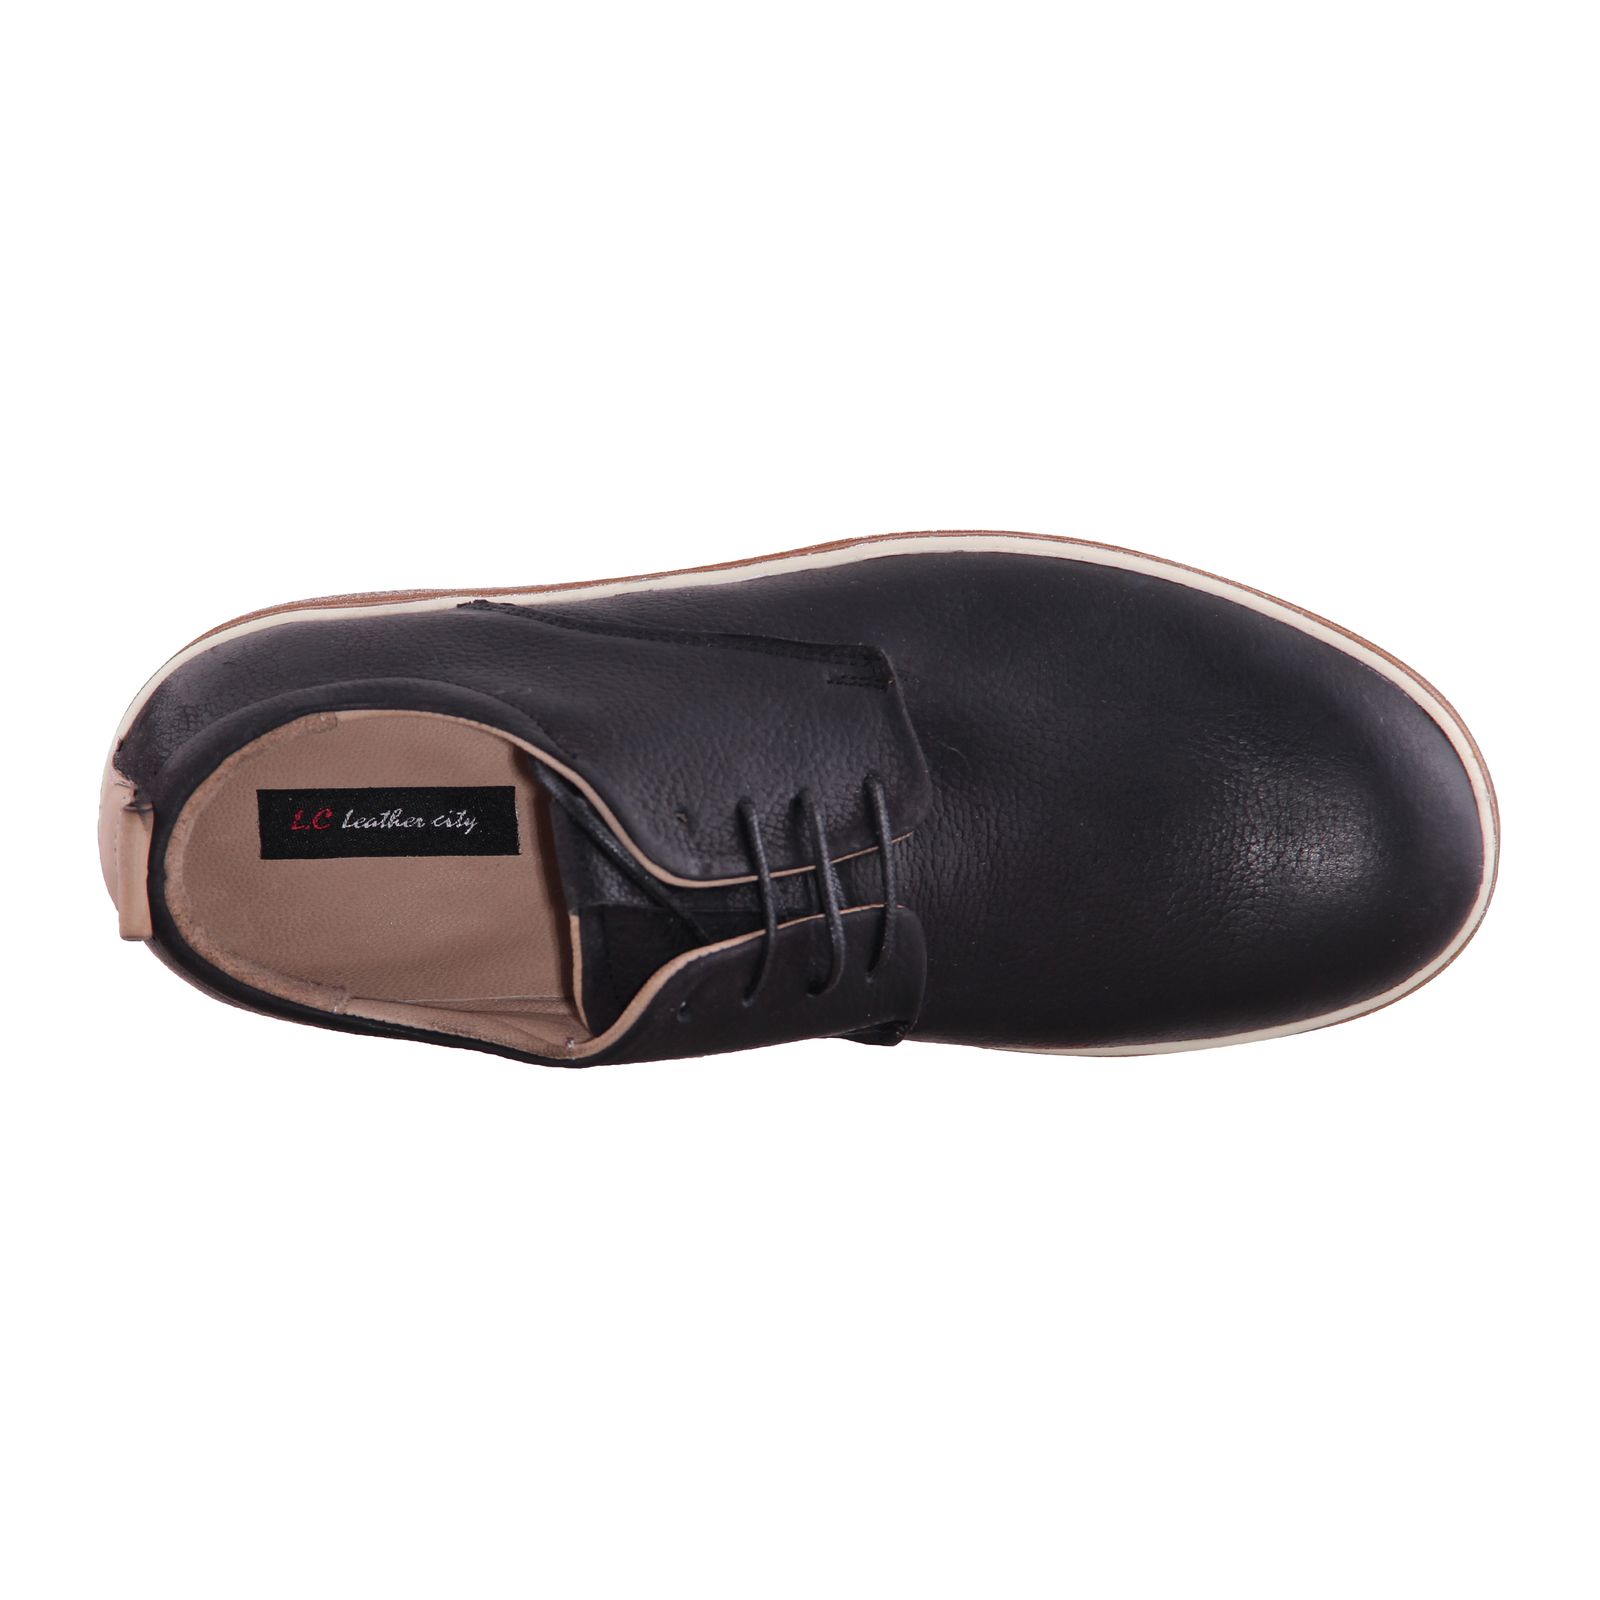  کفش روزمره مردانه شهرچرم مدل S2156-1 -  - 4